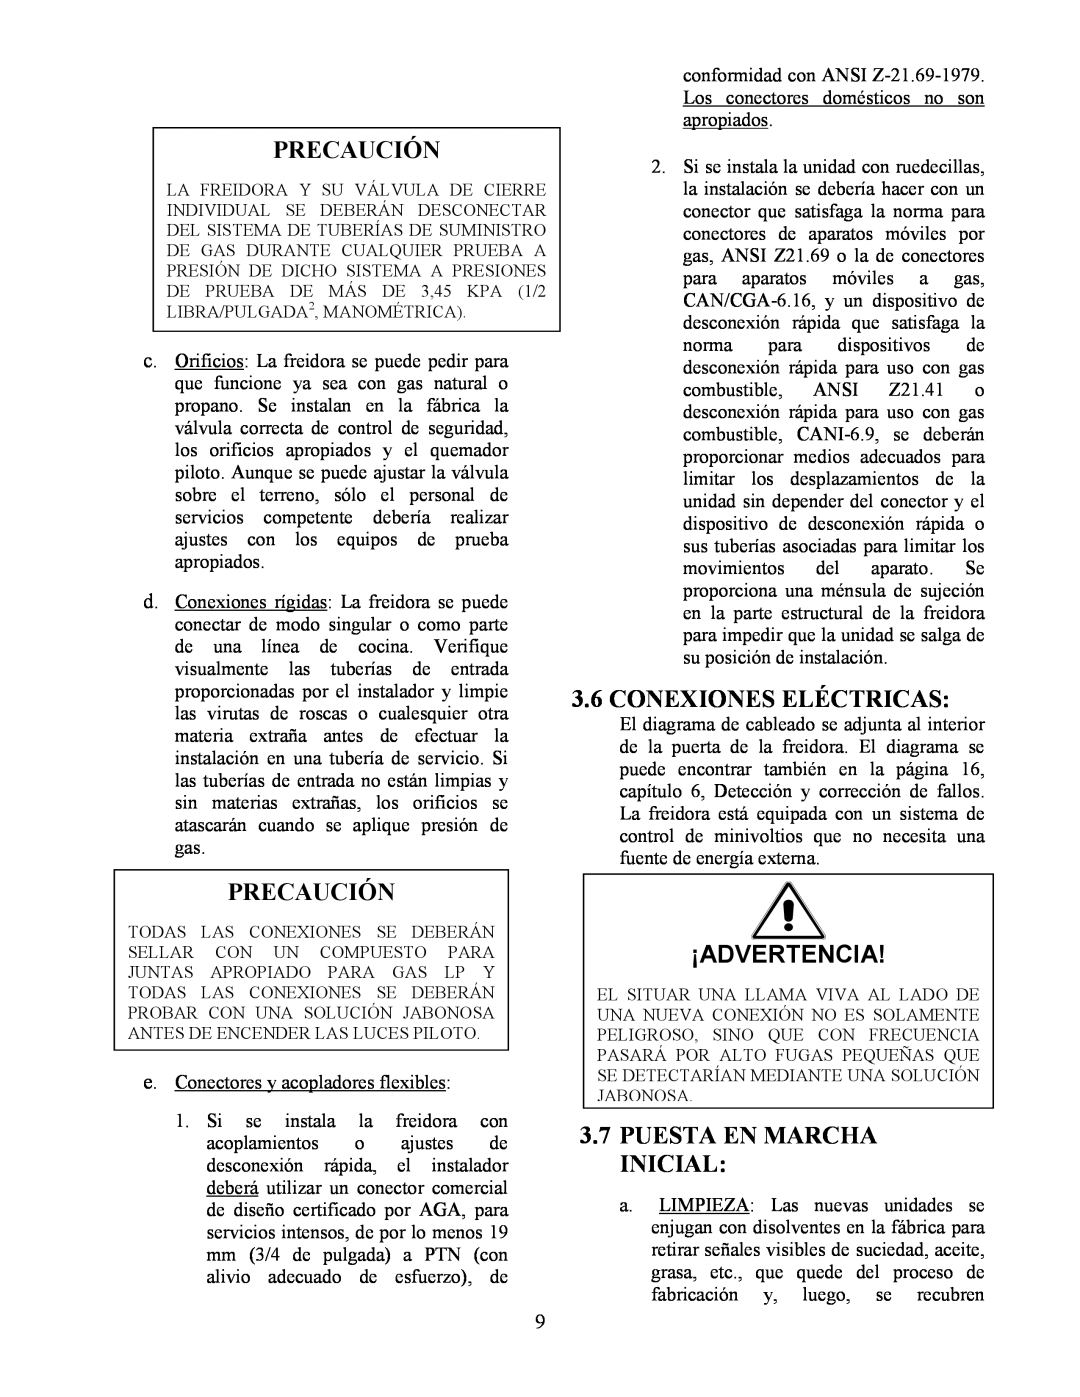 Frymaster Y SM80 manual 3.6CONEXIONES ELÉCTRICAS, ¡Advertencia, 3.7PUESTA EN MARCHA INICIAL, Precaución 